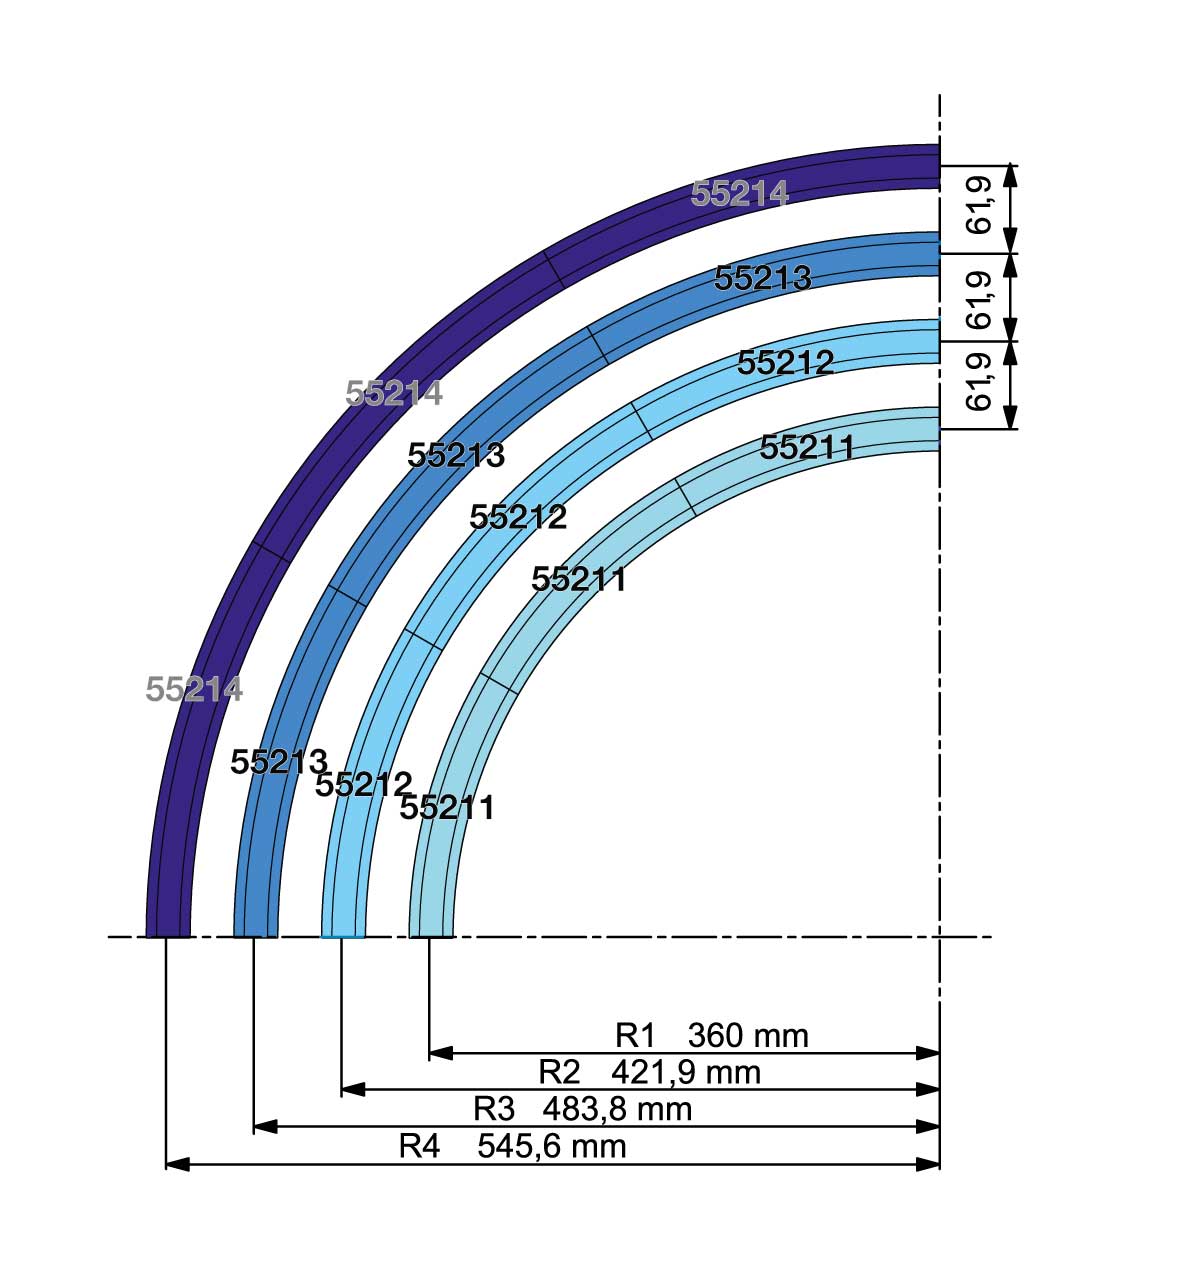 Die PIKO A Gleis Radien R1, R2, R3 und R4 im Schema